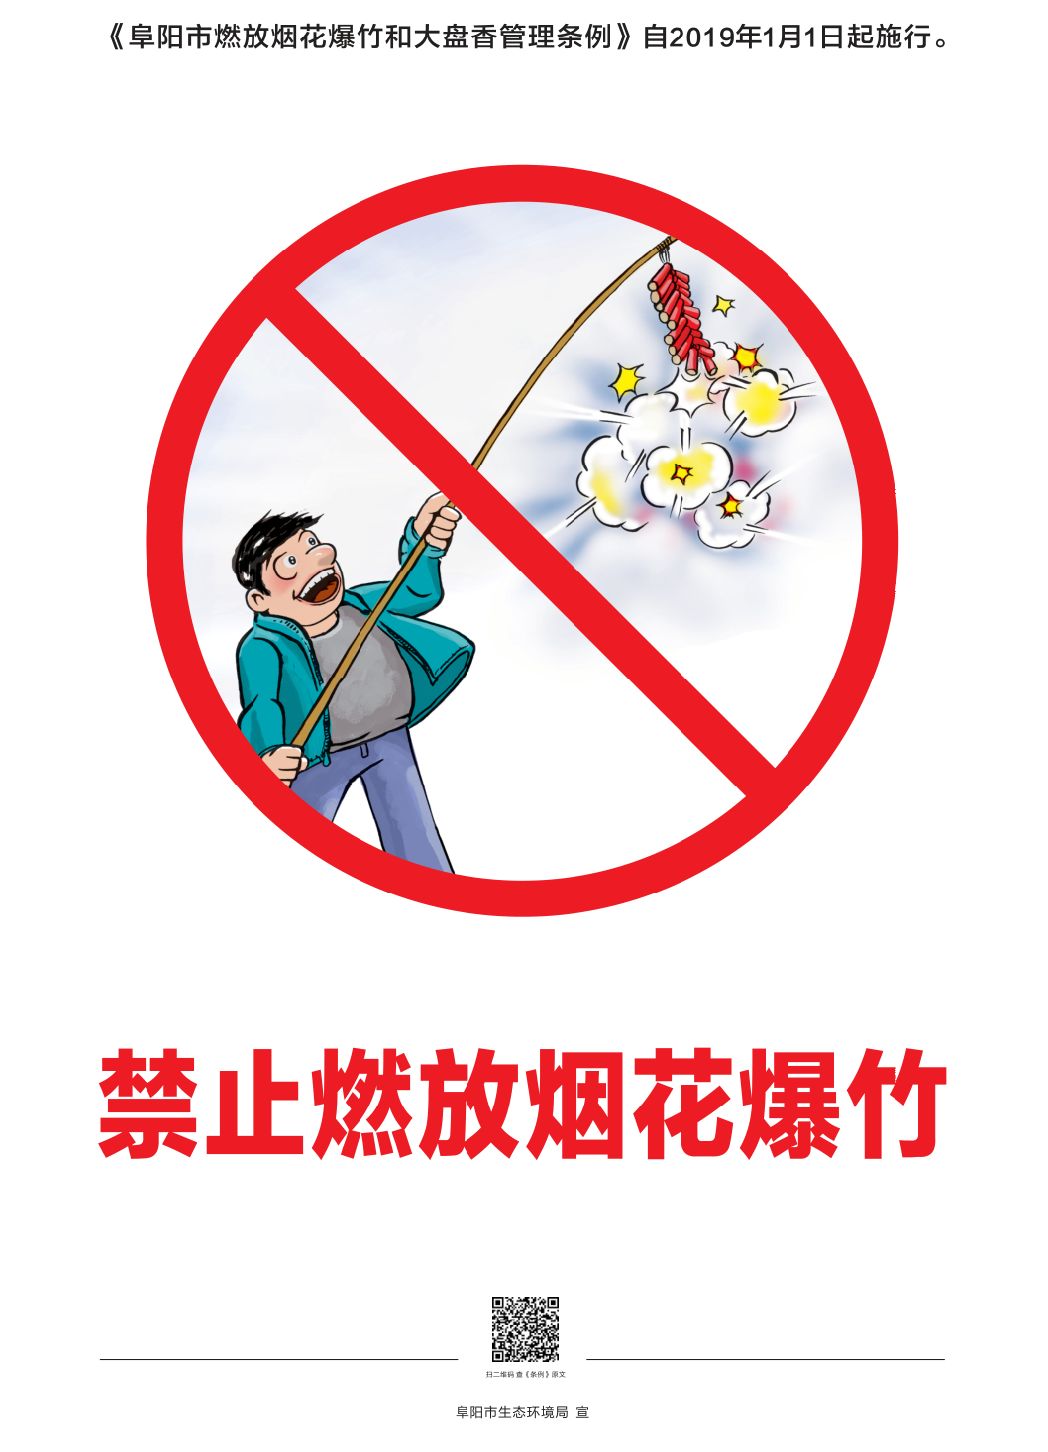 阜阳市人民政府关于禁止燃放烟花爆竹和大盘香的通告